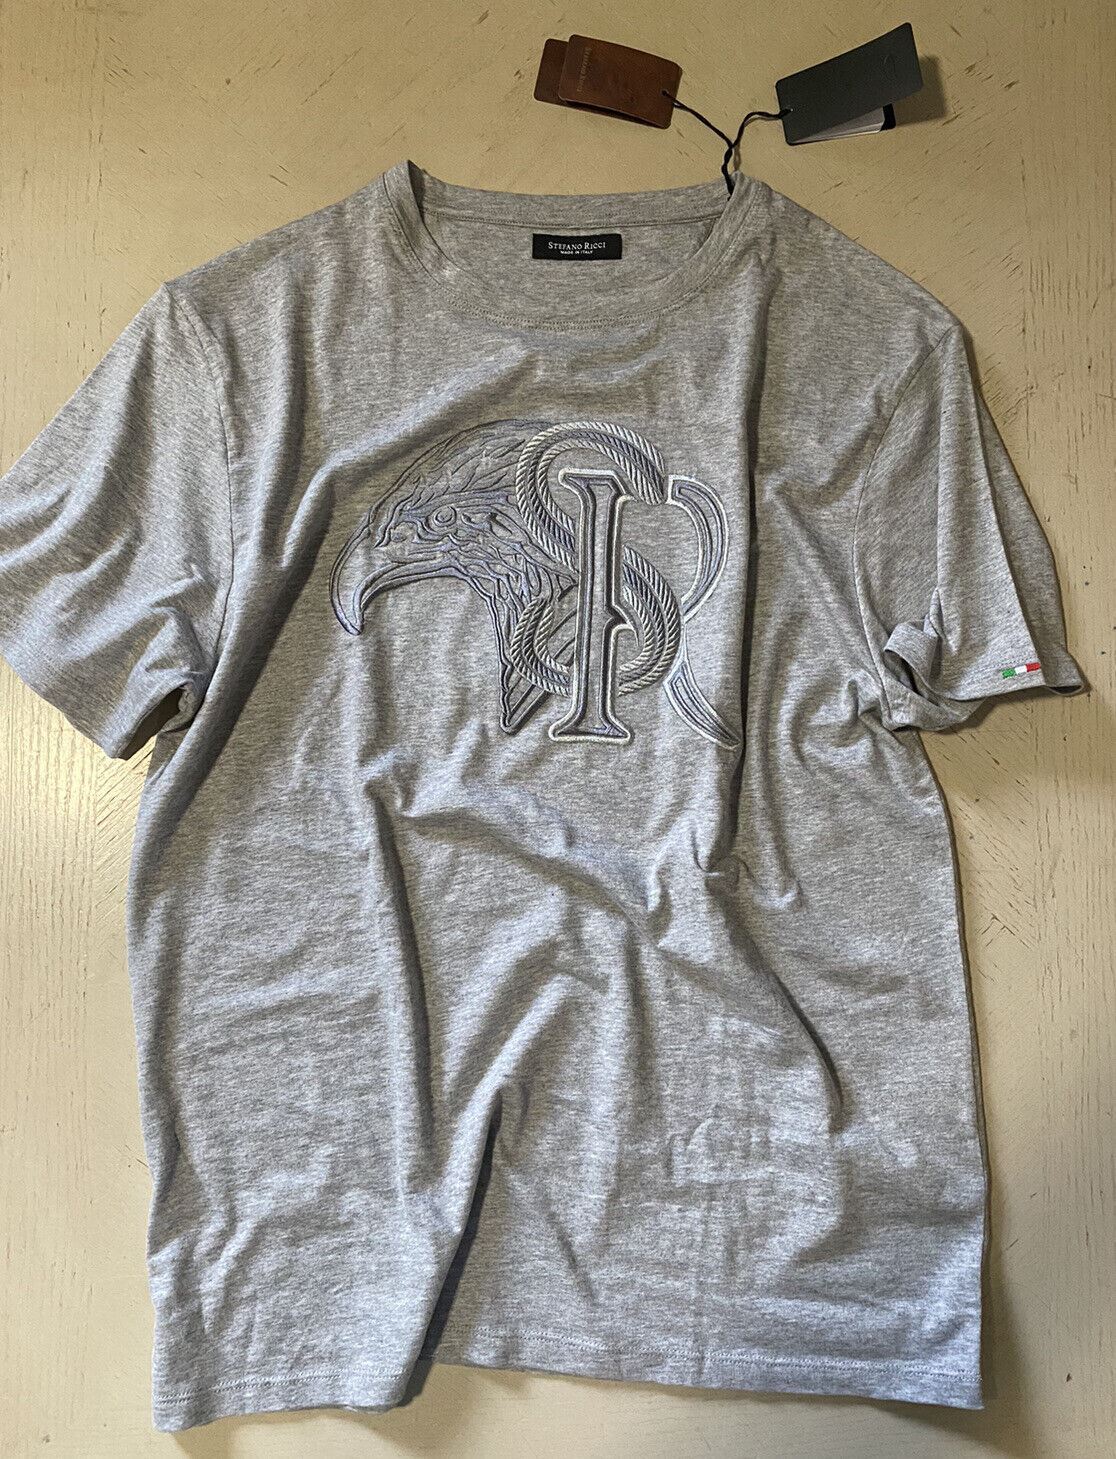 Neu mit Etikett: Stefano Ricci Herren-T-Shirt aus Baumwolle und Modal, Grau, Größe XL US (2XL Eu)